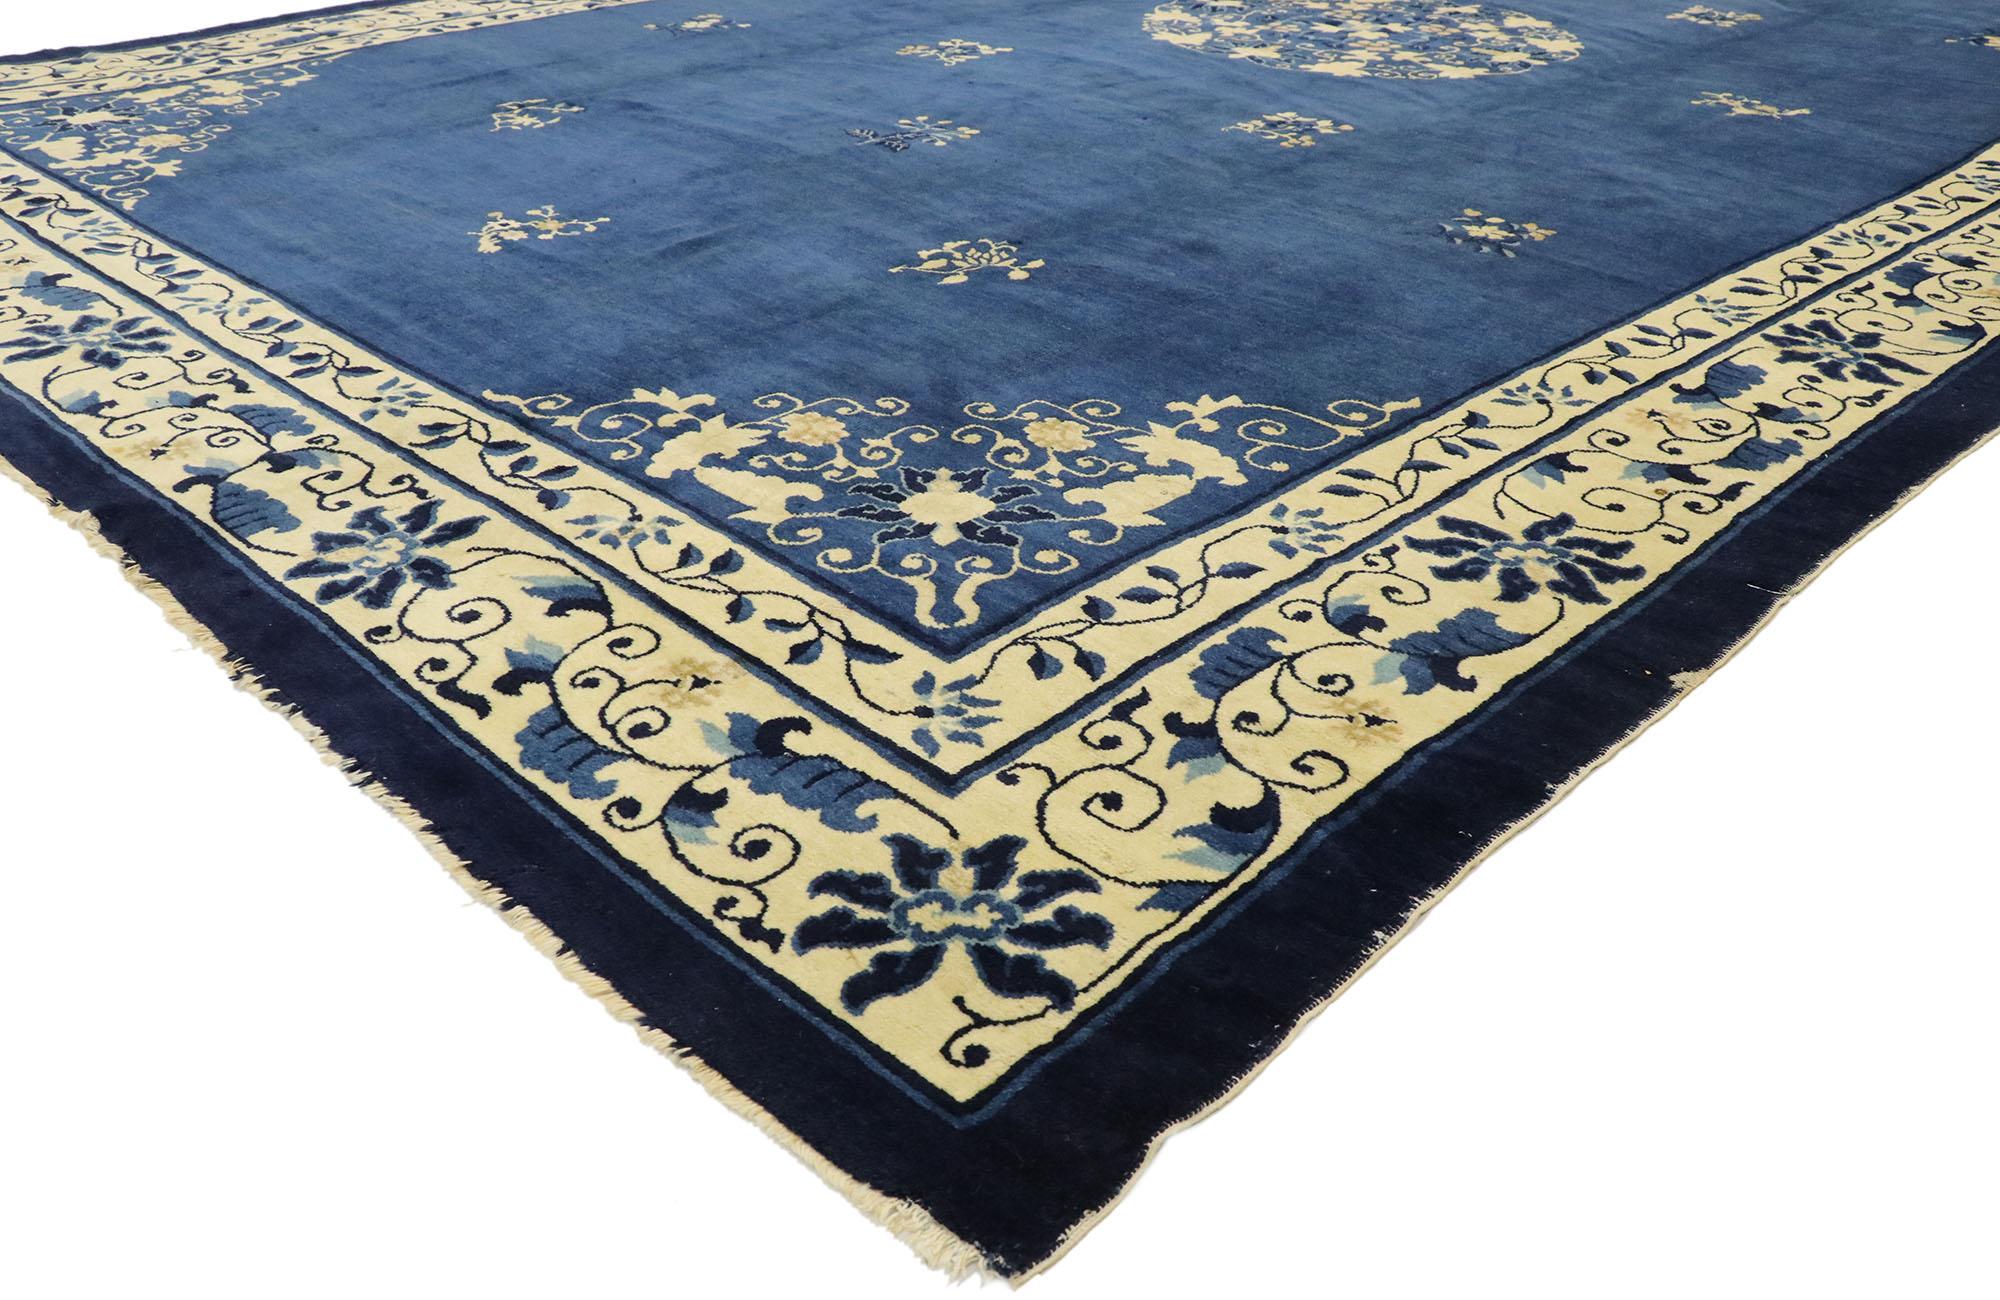 77442 tapis chinois ancien de Pékin avec style chinoiserie romantique. Ce tapis chinois ancien en laine nouée à la main présente un médaillon central ouvert et arrondi décoré d'un tourbillon de pivoines et de vrilles feuillues flottant au centre